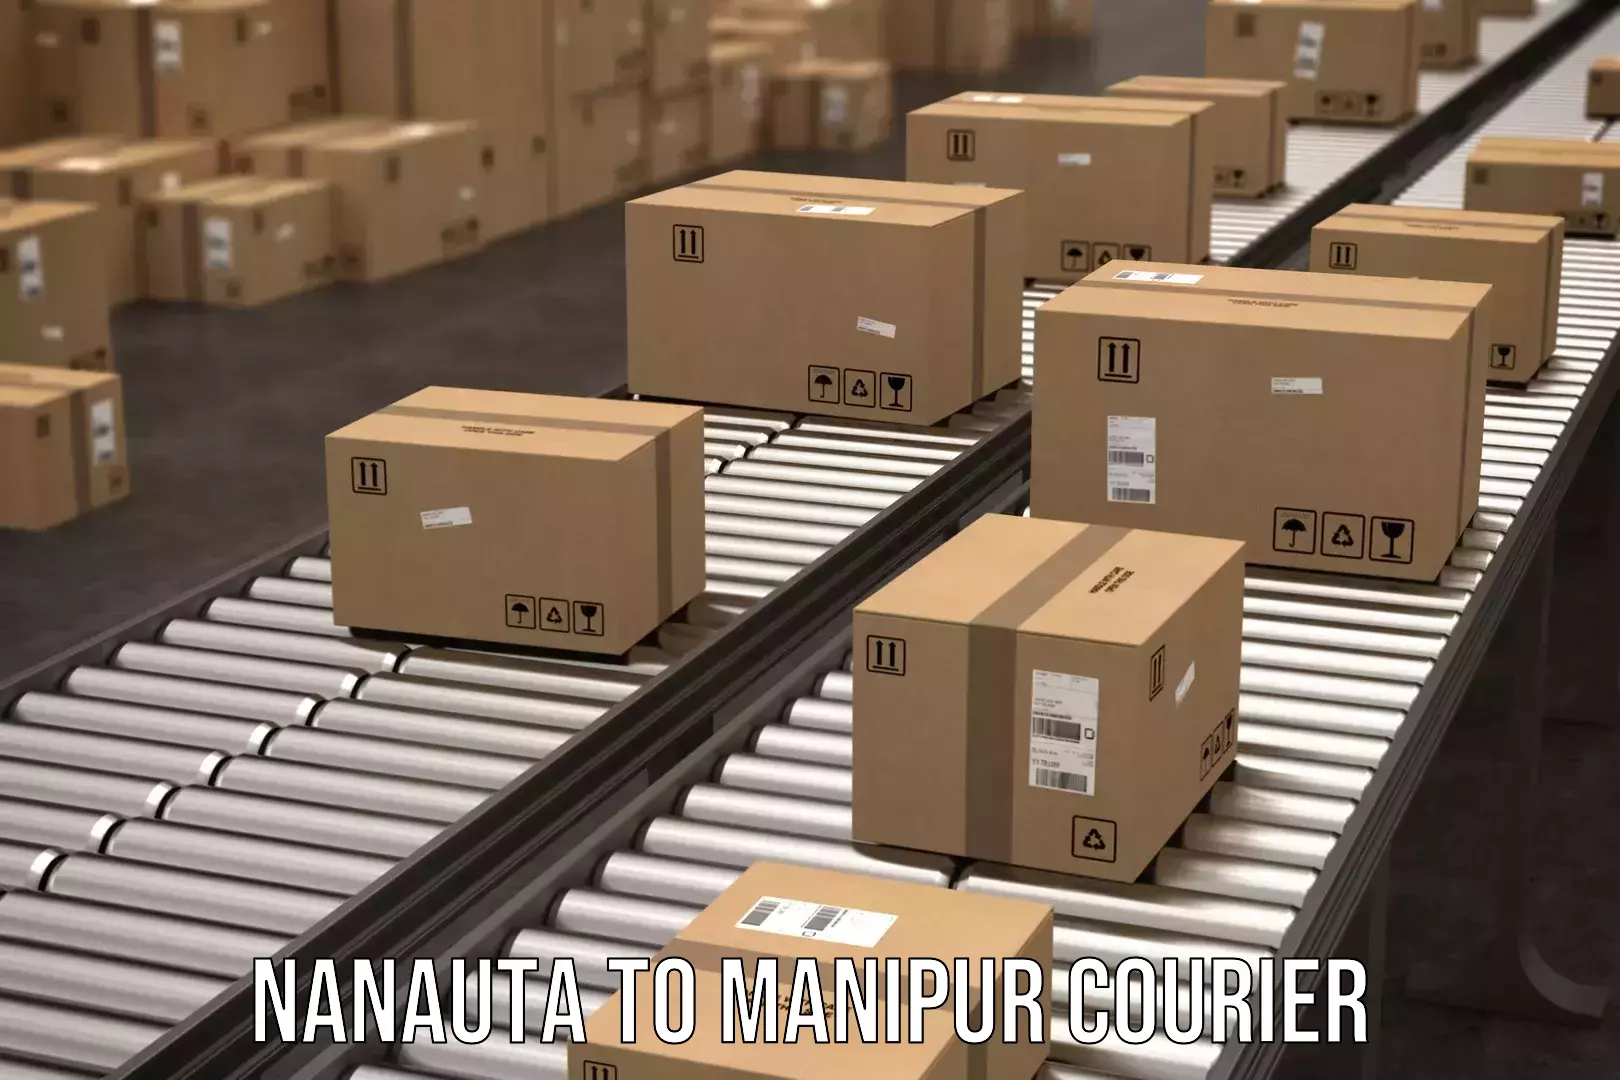 Door-to-door freight service Nanauta to IIIT Senapati